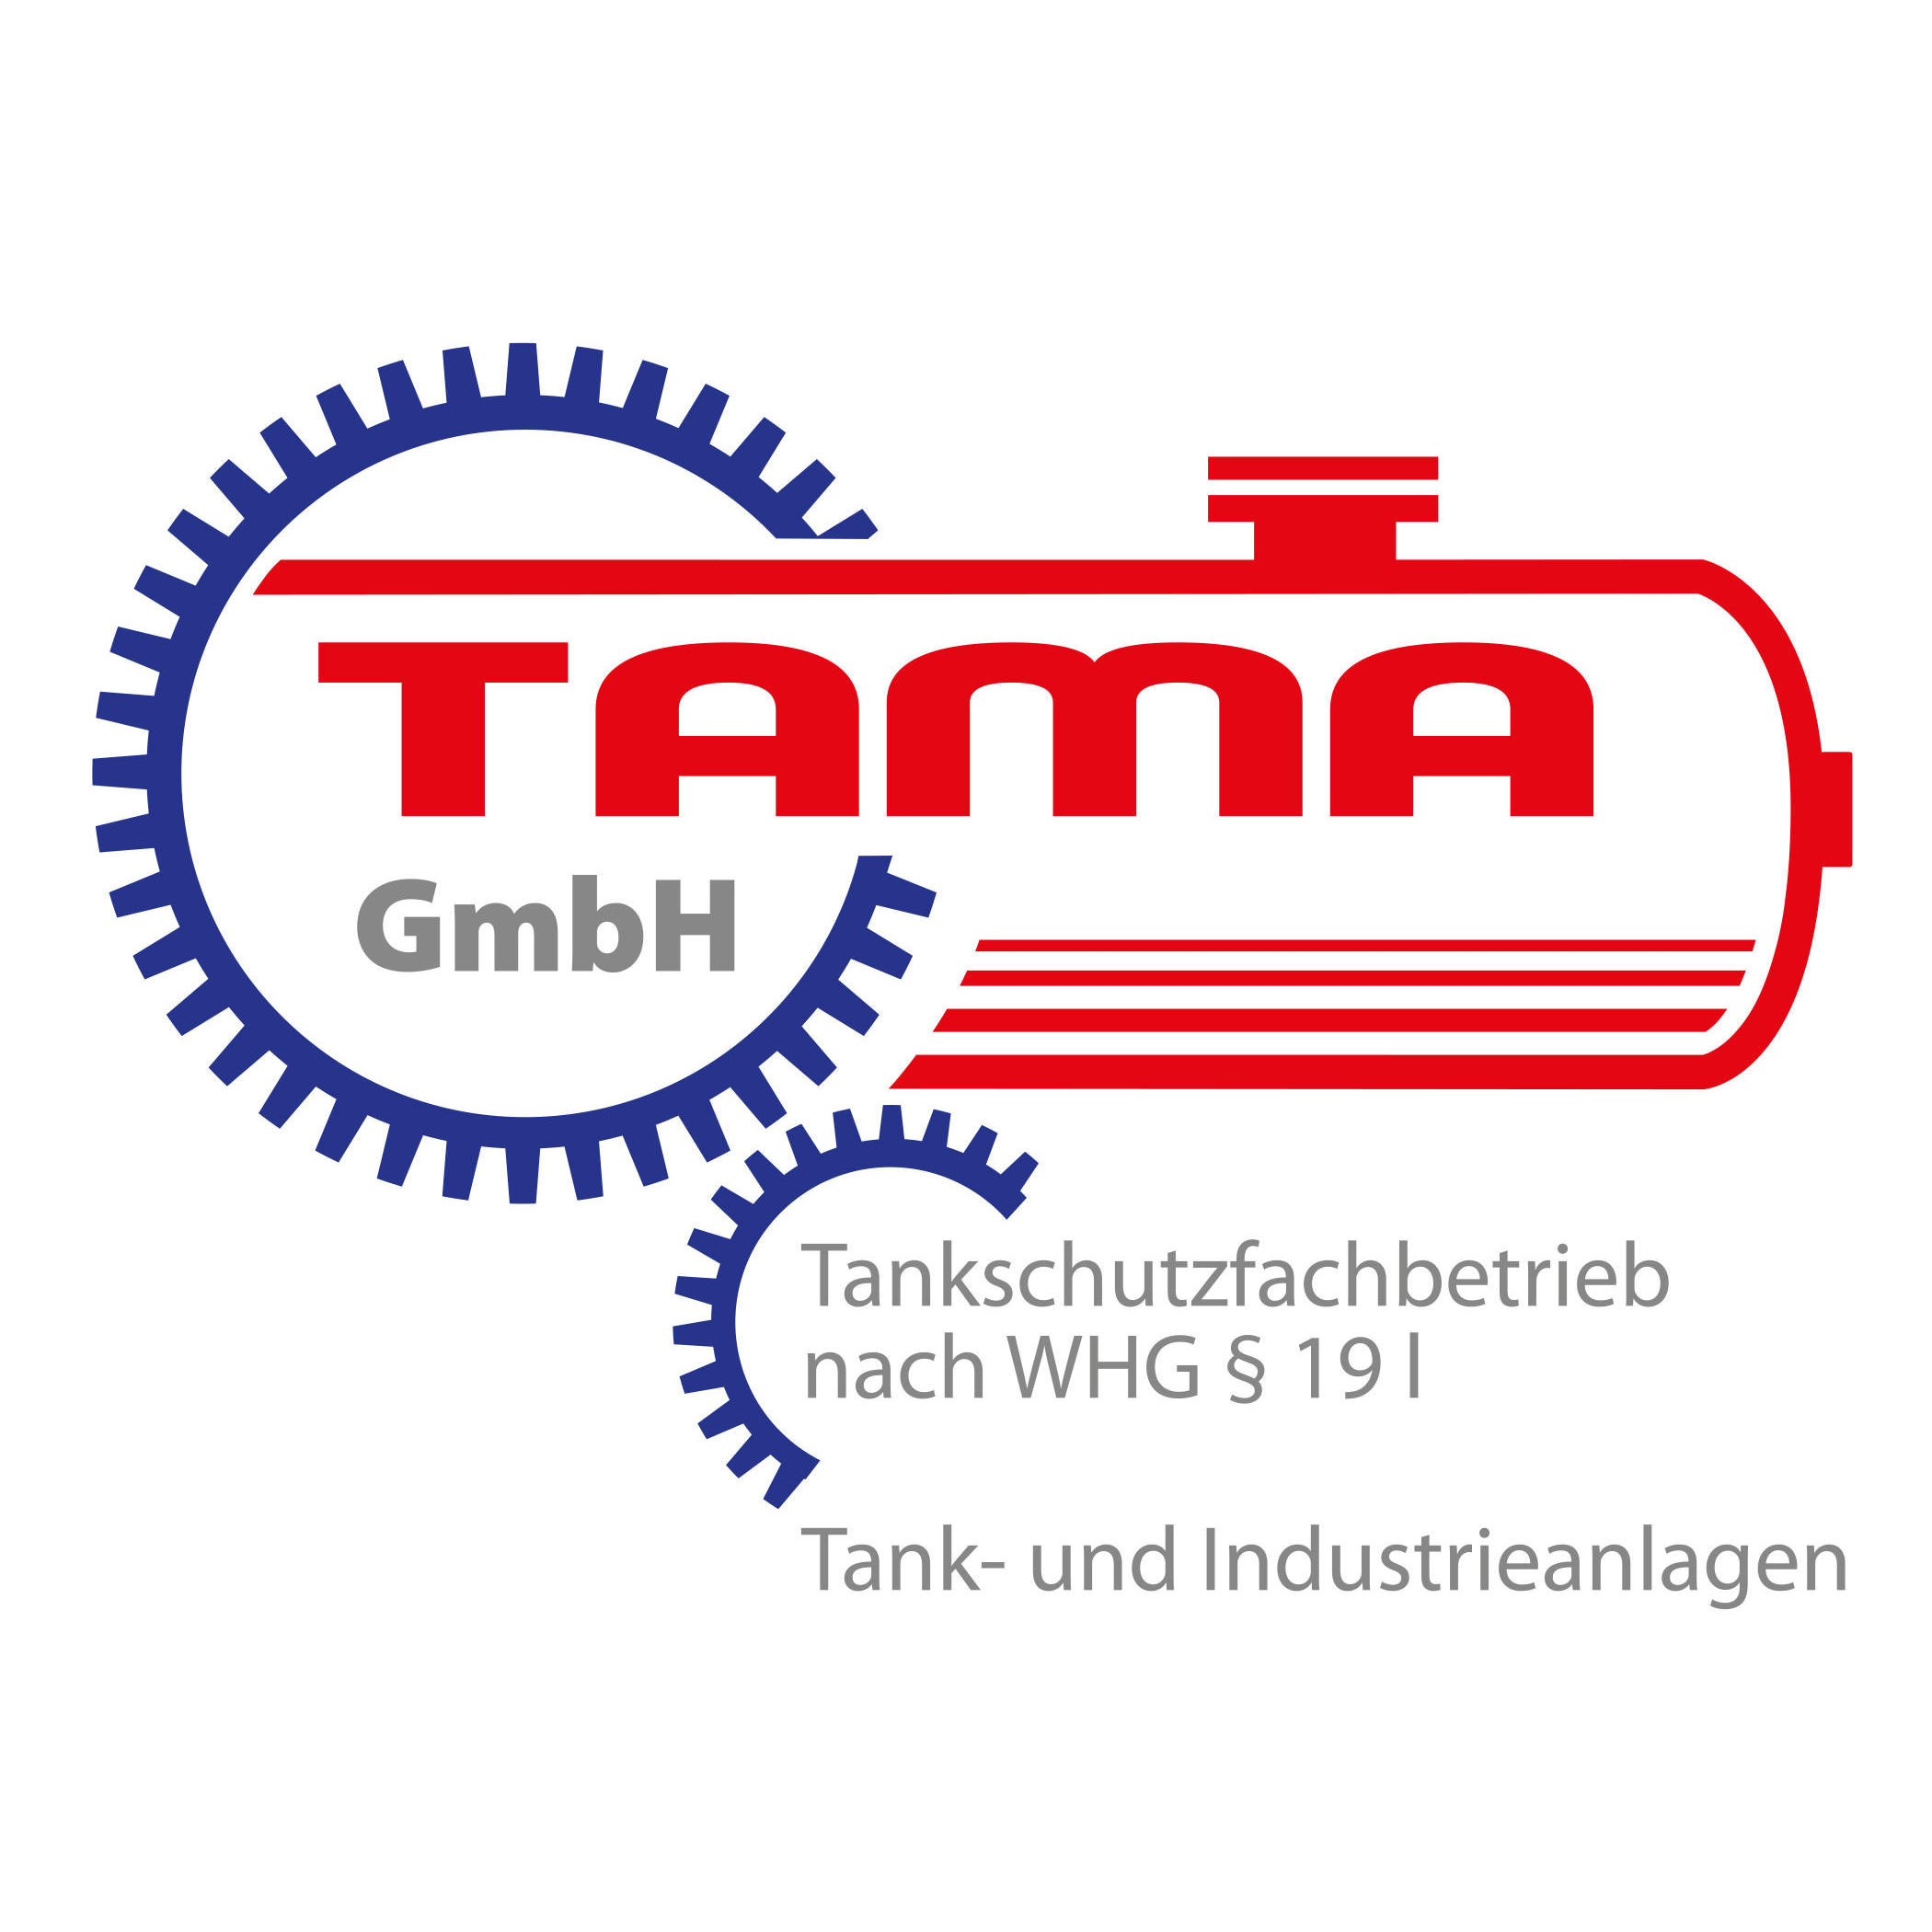 TAMA-GmbH Tank- und Industrieanlagen in Berlin - Logo